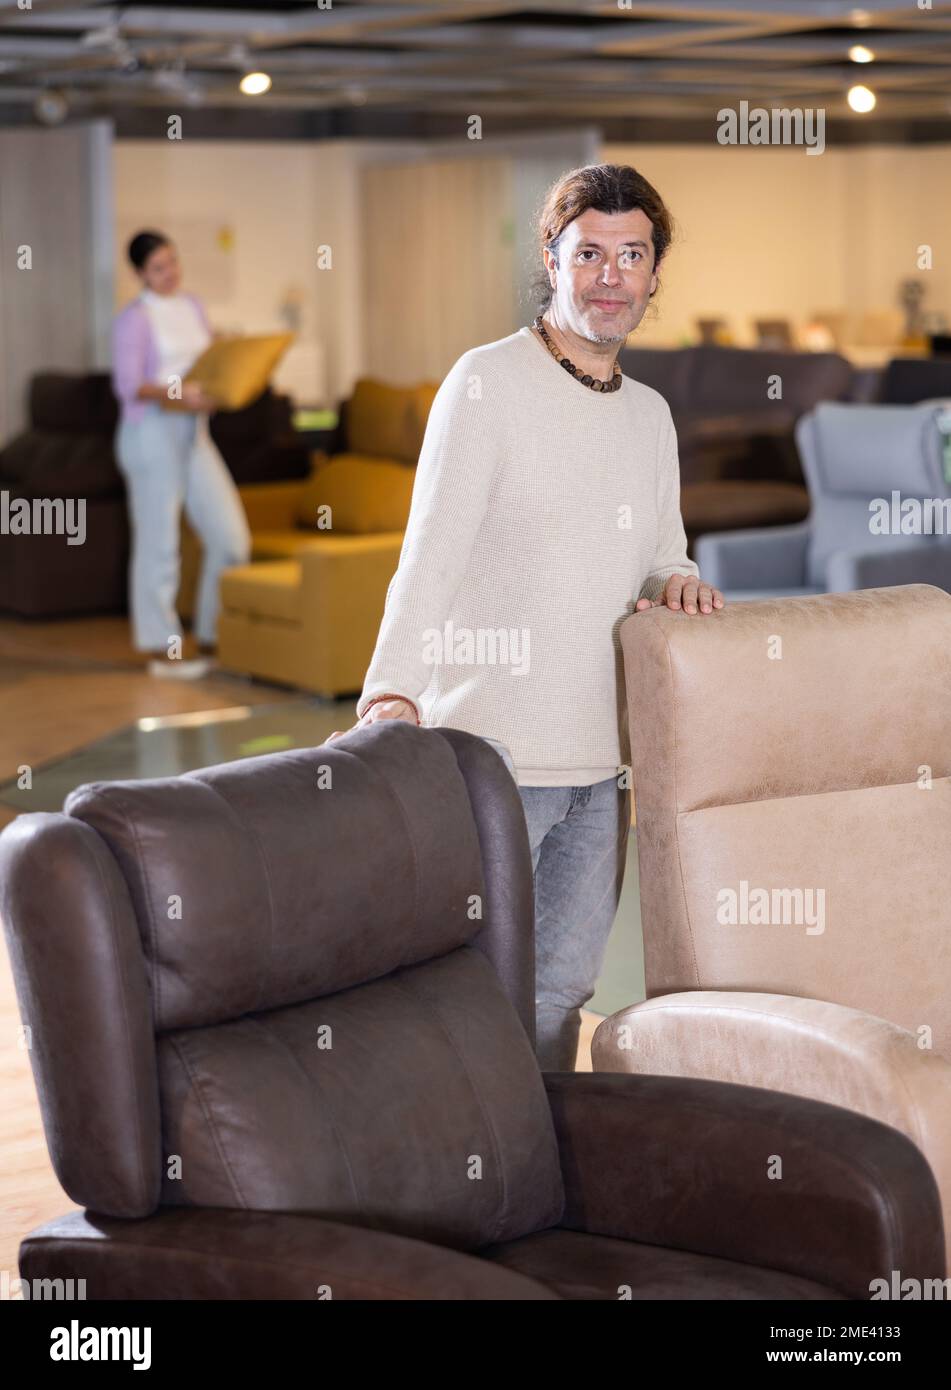 Un vendeur de meubles de sexe masculin présente des fauteuils à vendre dans une salle d'exposition de meubles Banque D'Images